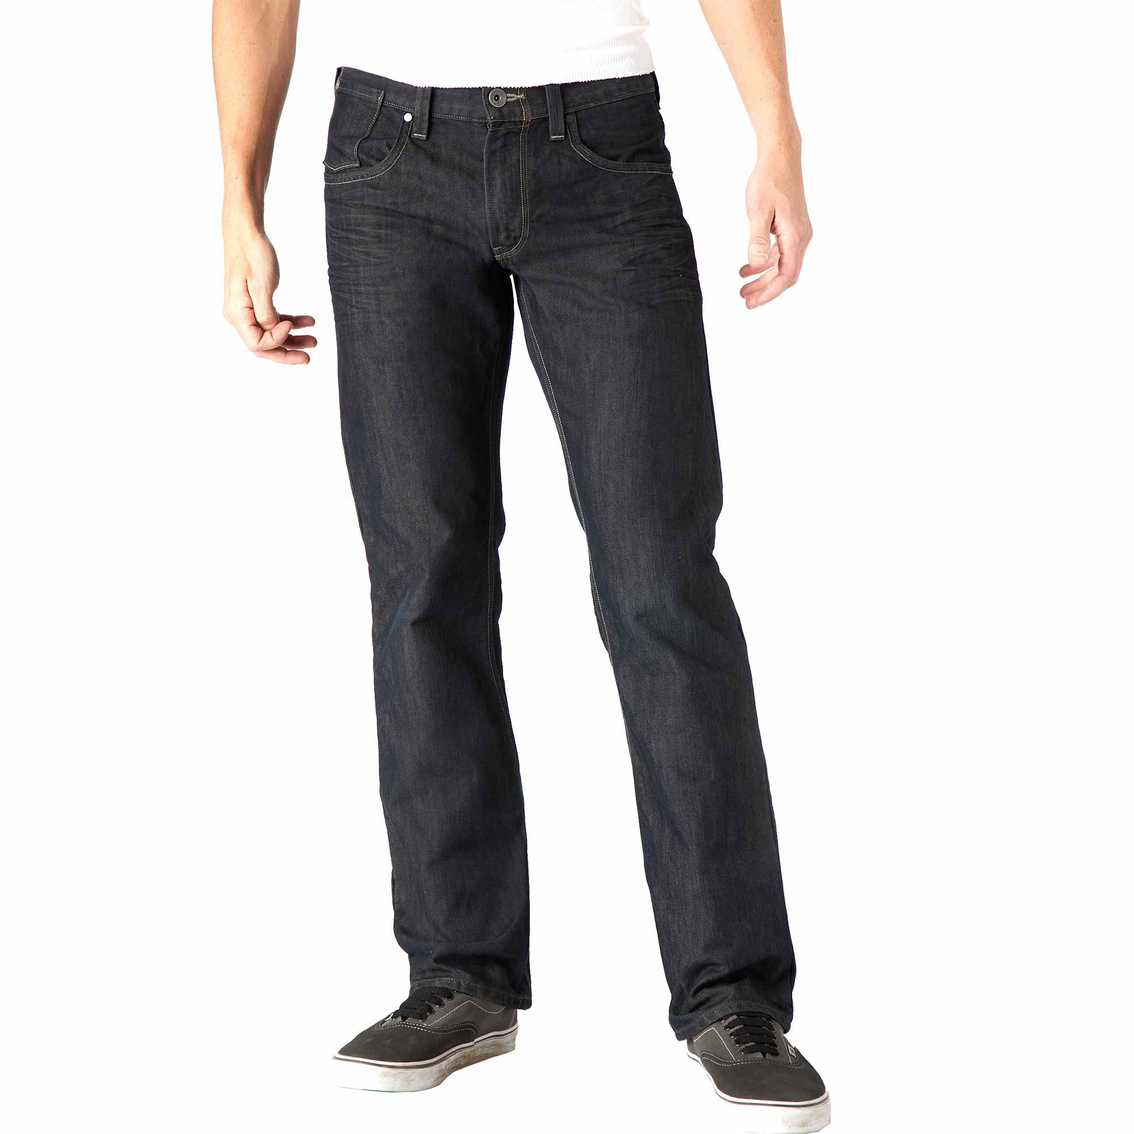 Levi's 514 5 Pocket Jeans | Jeans | Apparel | Shop The Exchange